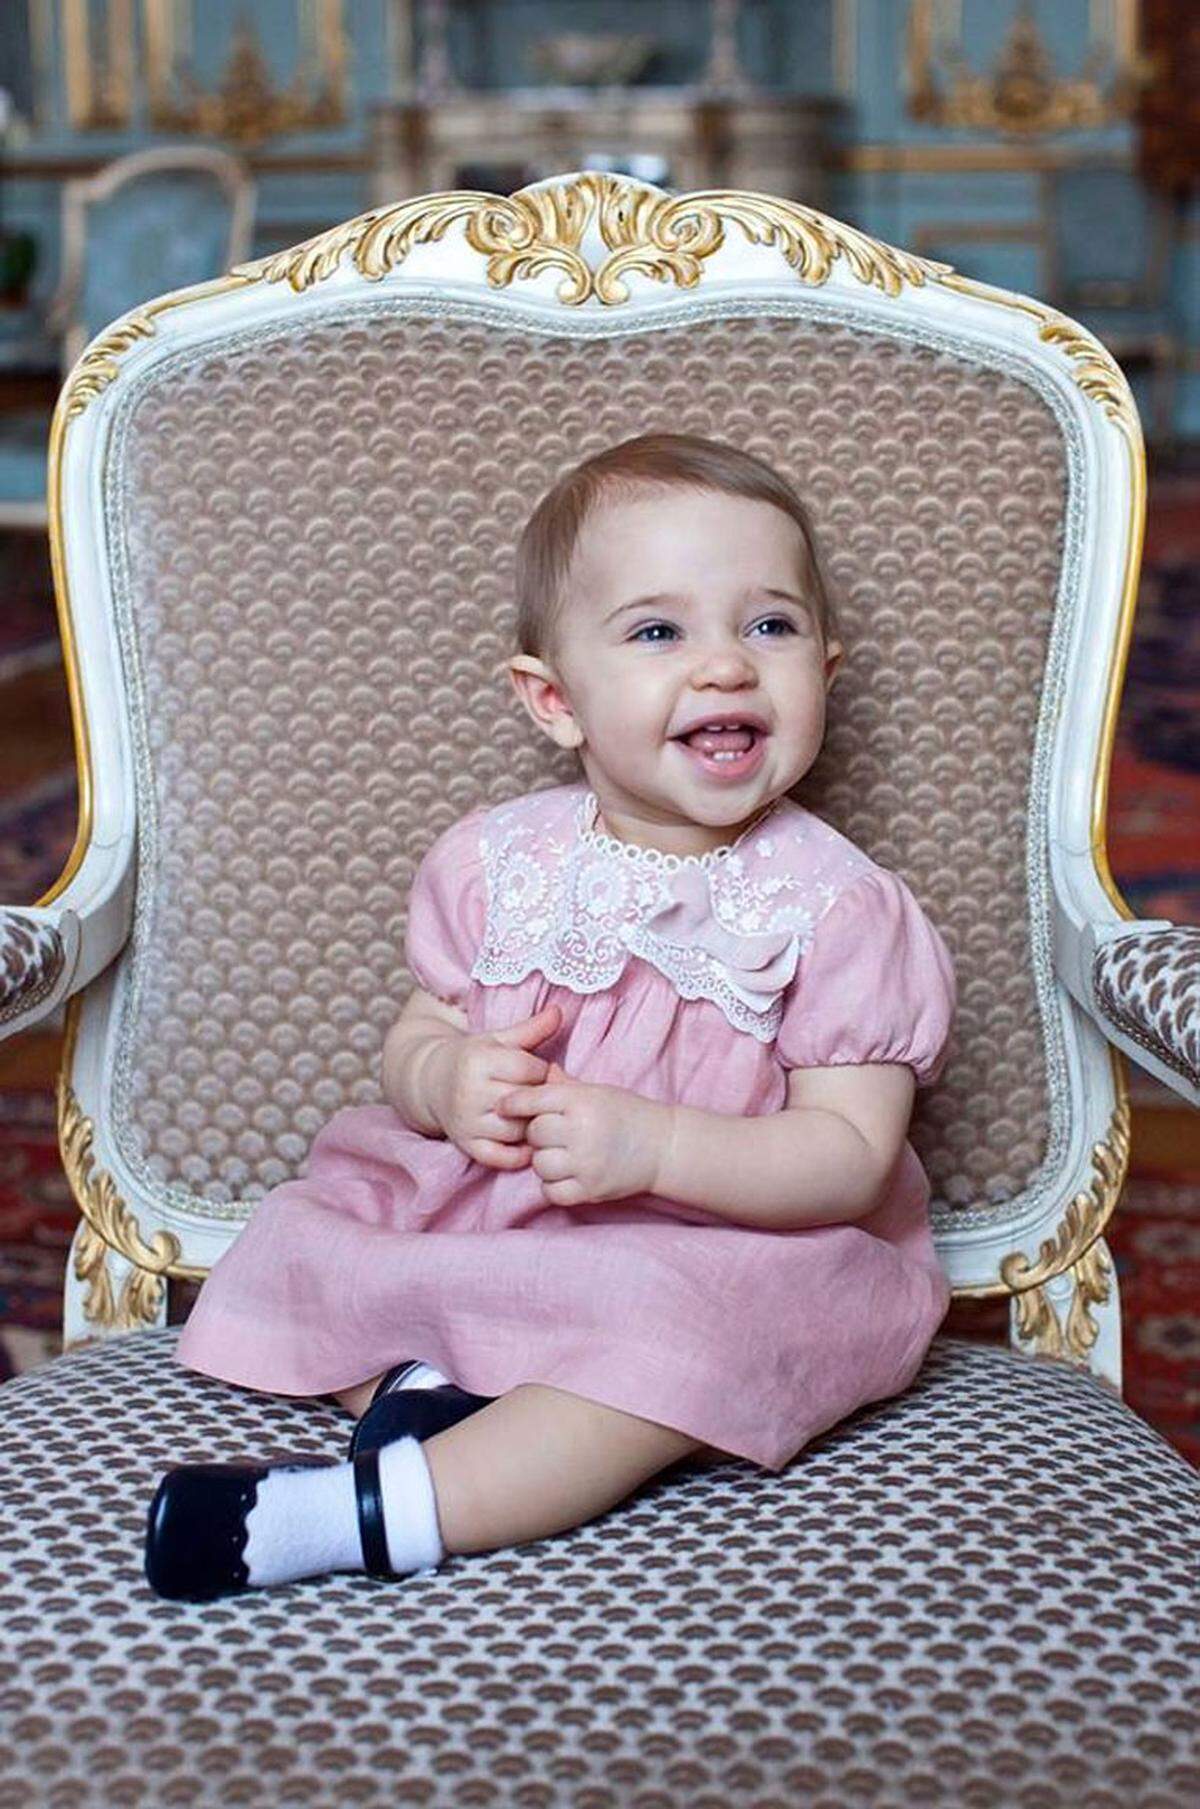 Zum ersten Geburtstag ihres Töchterchens hat die schwedische Prinzessin Madeleine (32) ein Foto von der Kleinen auf Facebook gepostet. "Leonore, unser kleiner Sonnenschein, wird heute ein Jahr alt!" schreibt Madeleine darunter über das Nesthäkchen des Königshauses.Februar, 2015